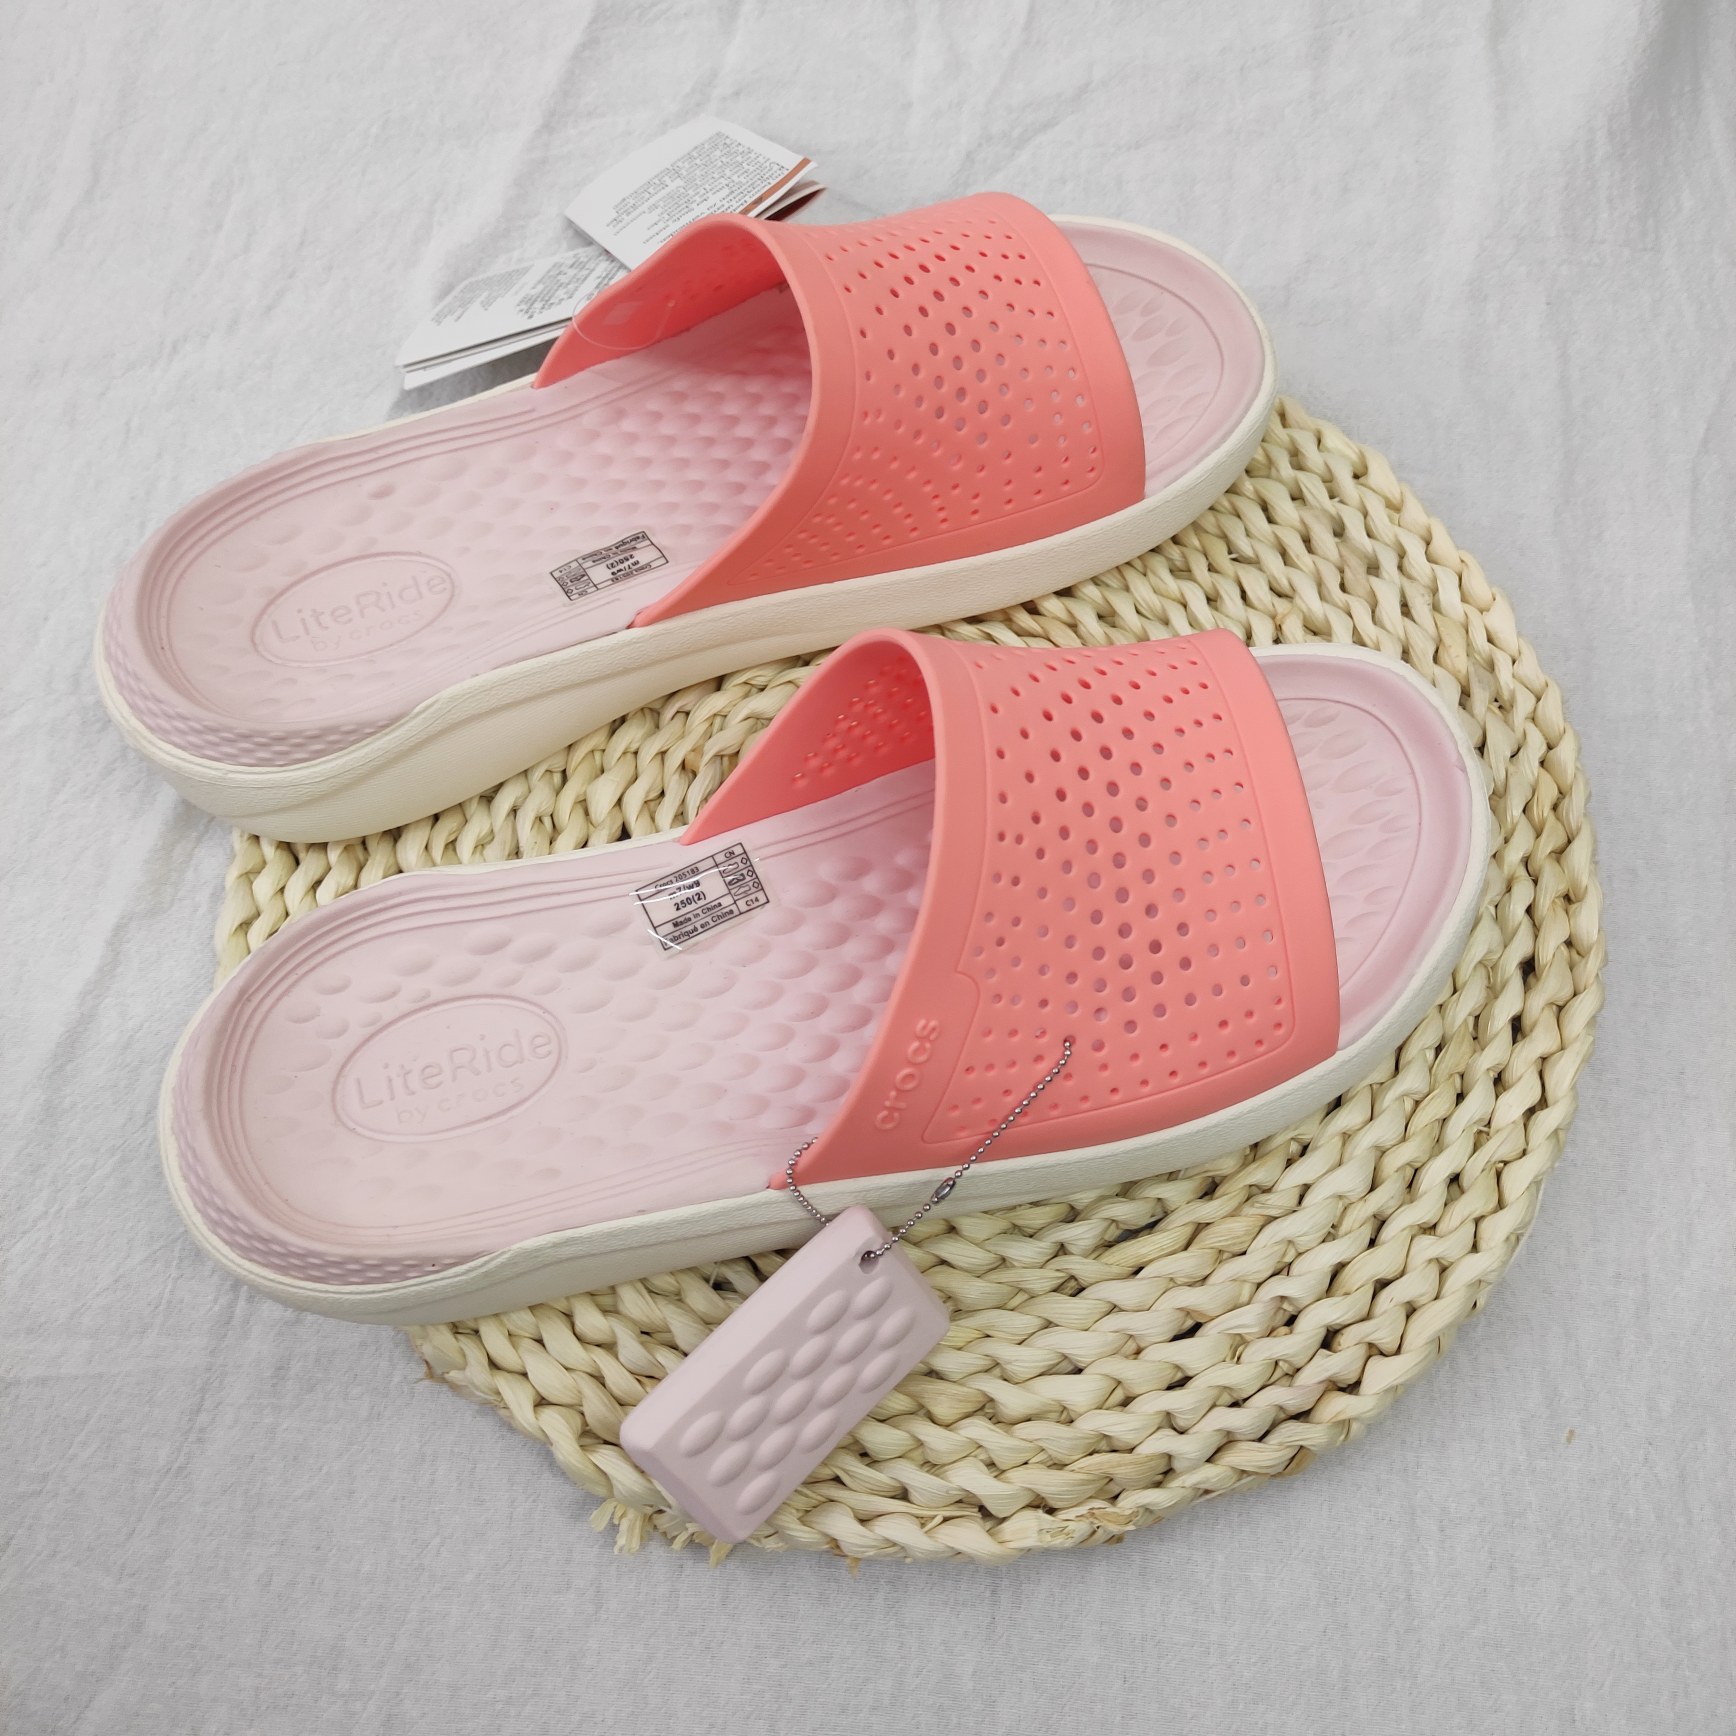 SAYYAS Men's and Women's LiteRide Slide Sandals Pink